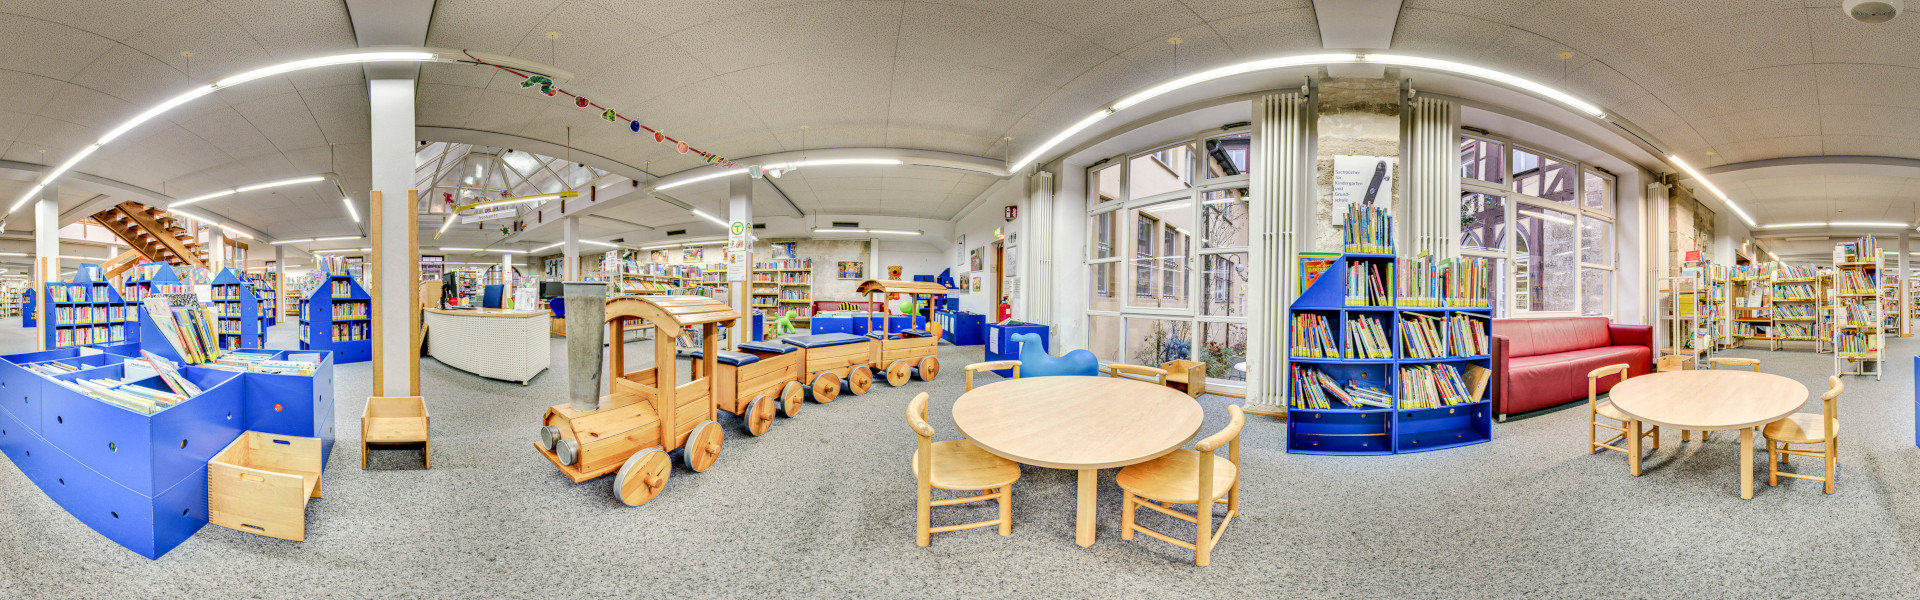 Ein Rundbild der Kinderbücherei mit großem Zug, Regalen mit Medien und Sitzgelegenheiten